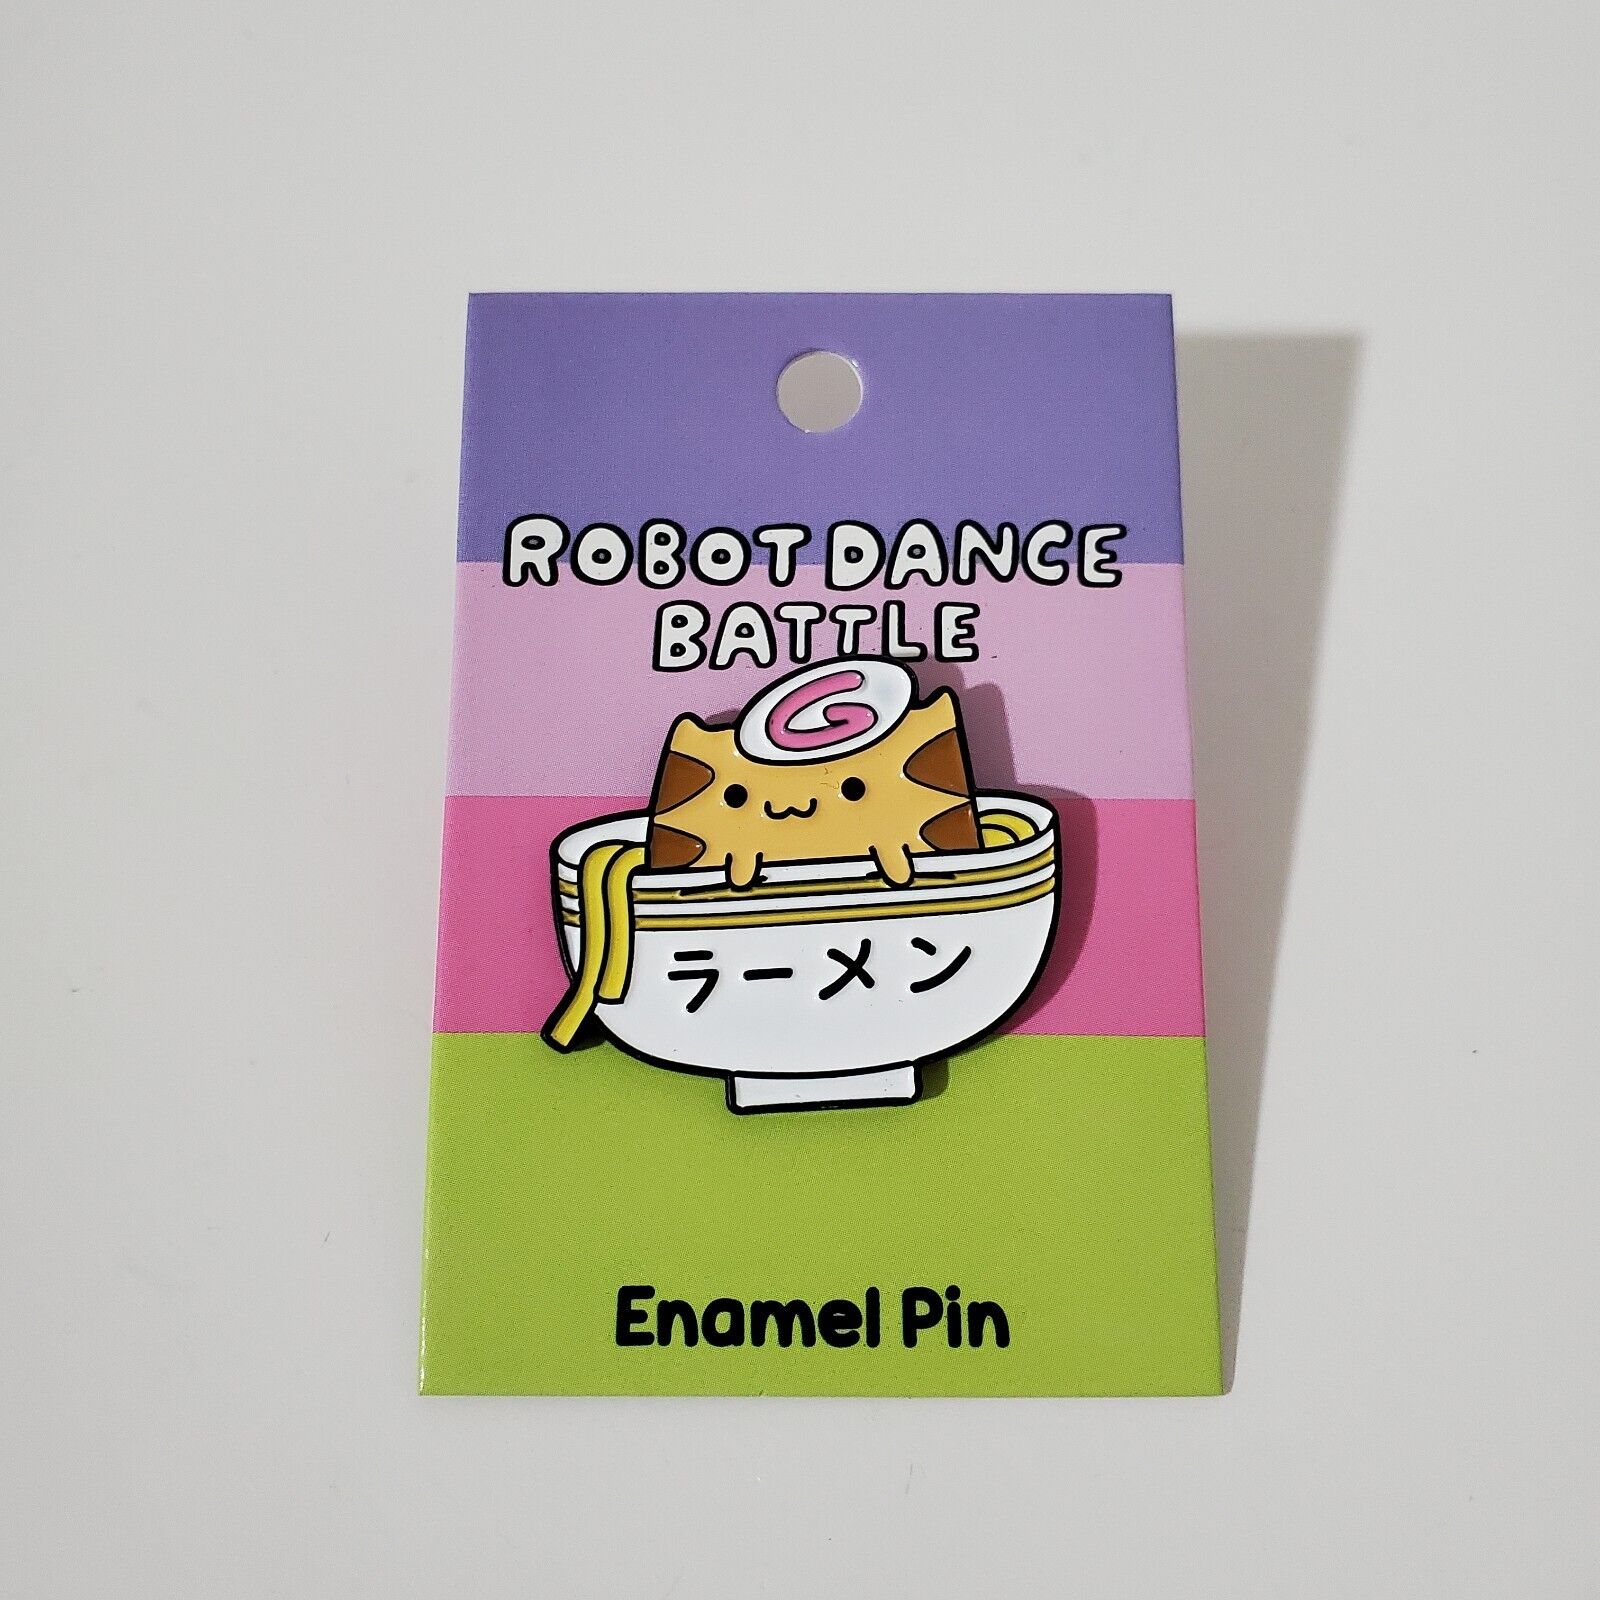 Ramen Cat Enamel Pin By Robot Dance Battle